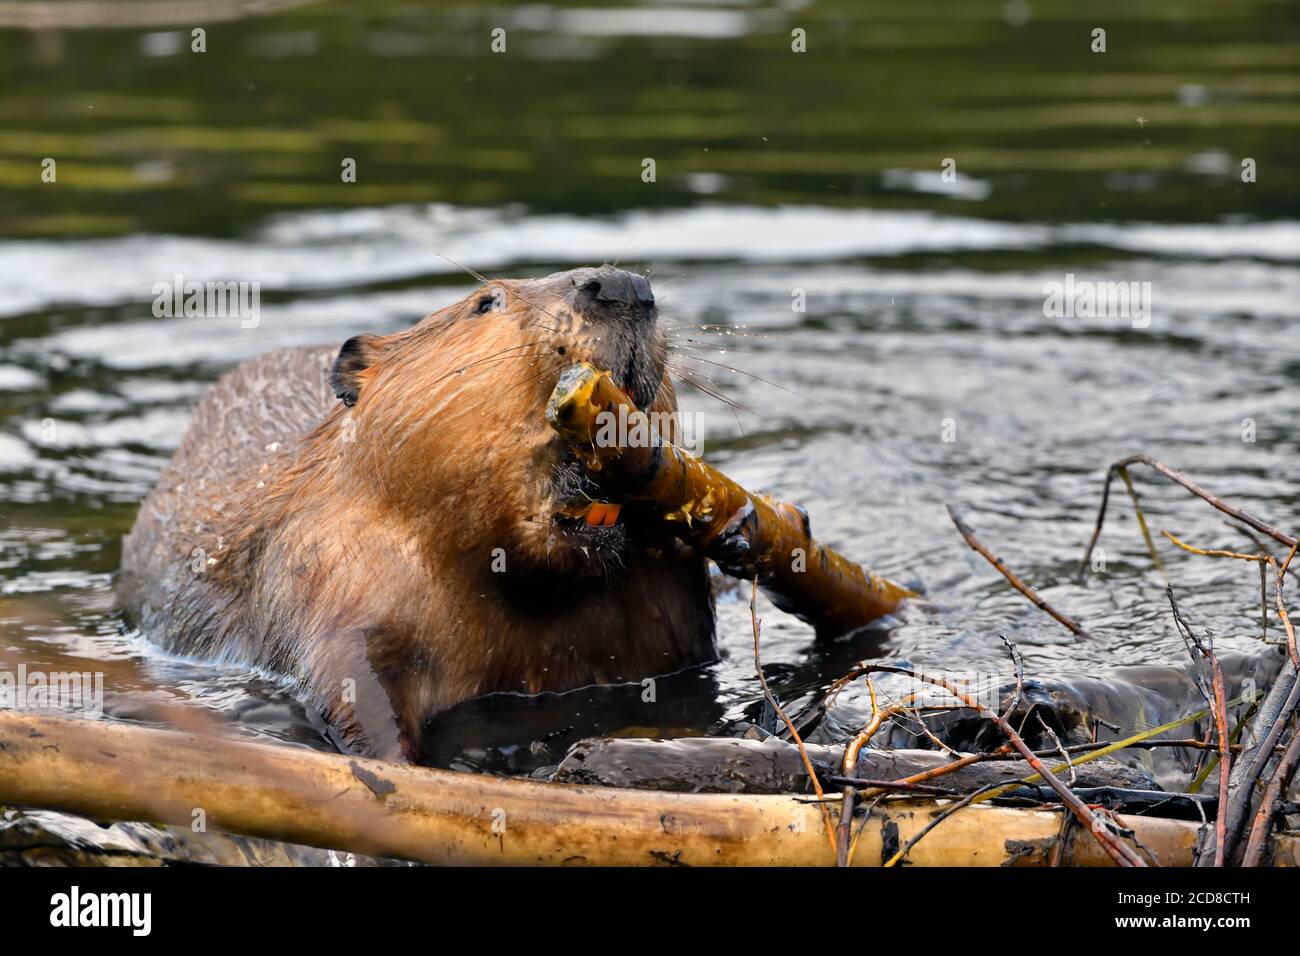 Un castor sauvage 'Castor canadensis', qui porte un bâton dans sa bouche pour être placé dans un trou de son barrage de castor dans la région rurale du Canada de l'Alberta. Banque D'Images